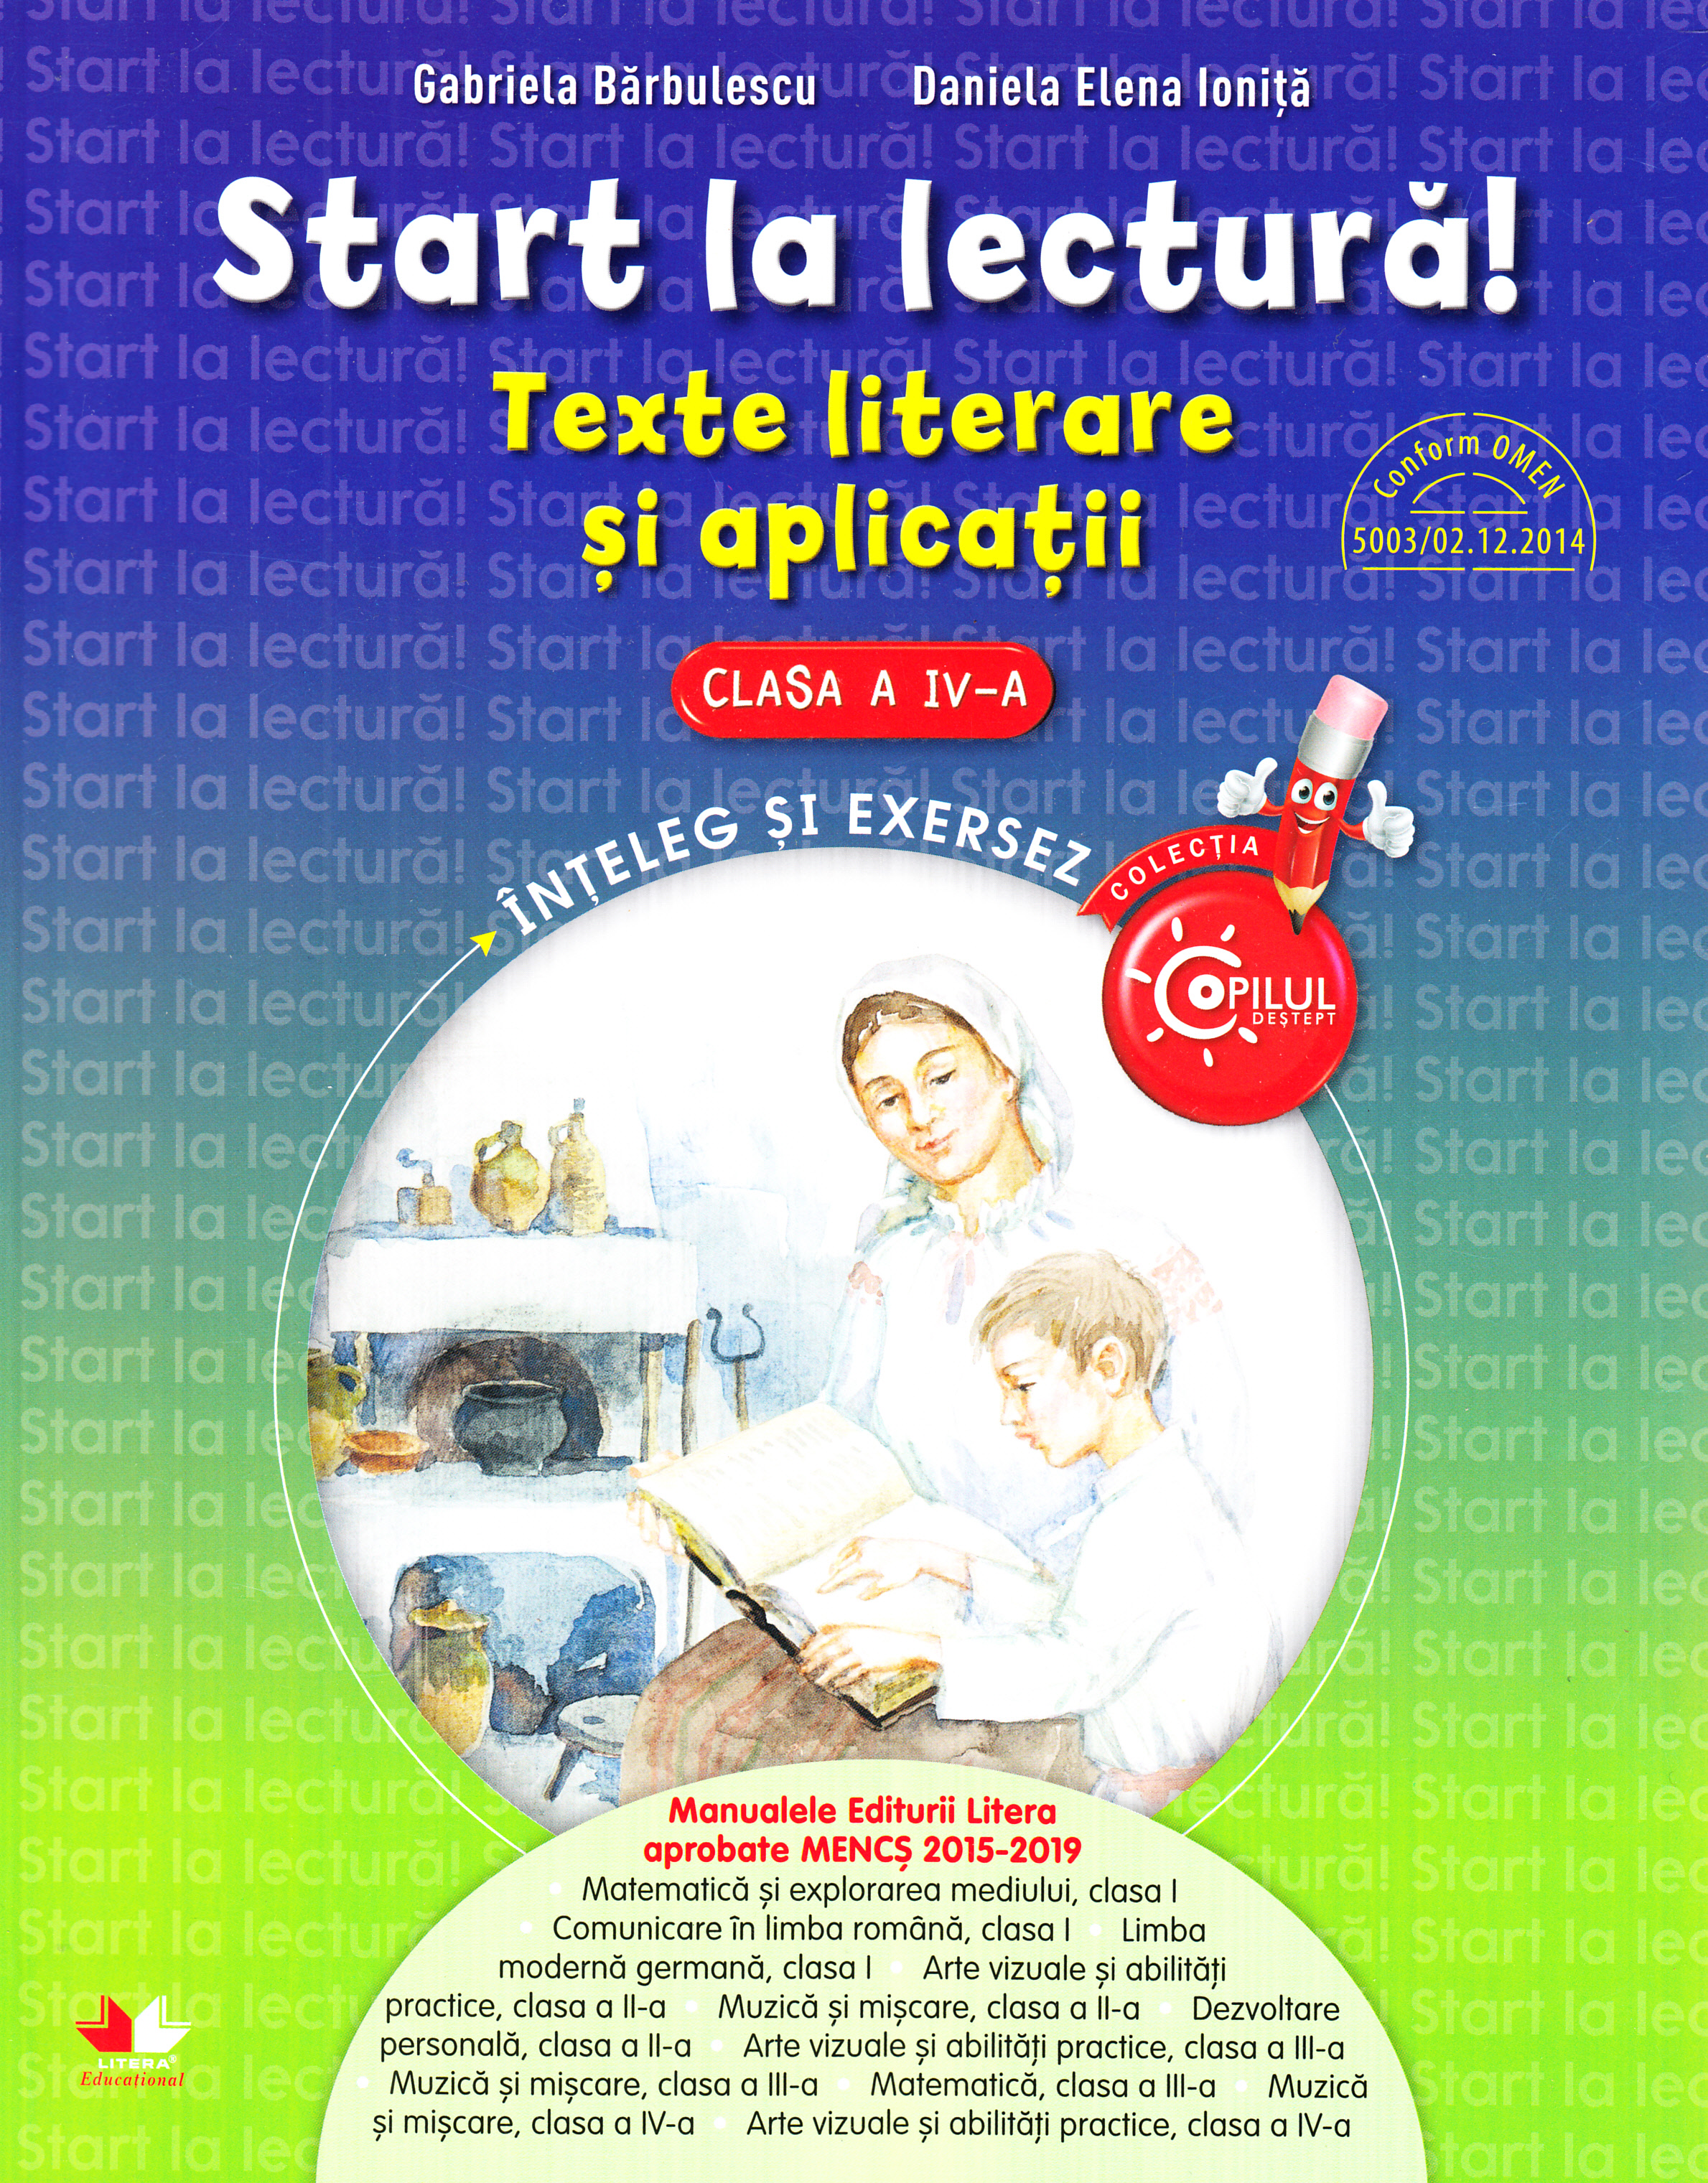 Start la lectura! Texte literare si aplicatii - Clasa 4 - Gabriela Barbulescu, Daniela Elena Ionita